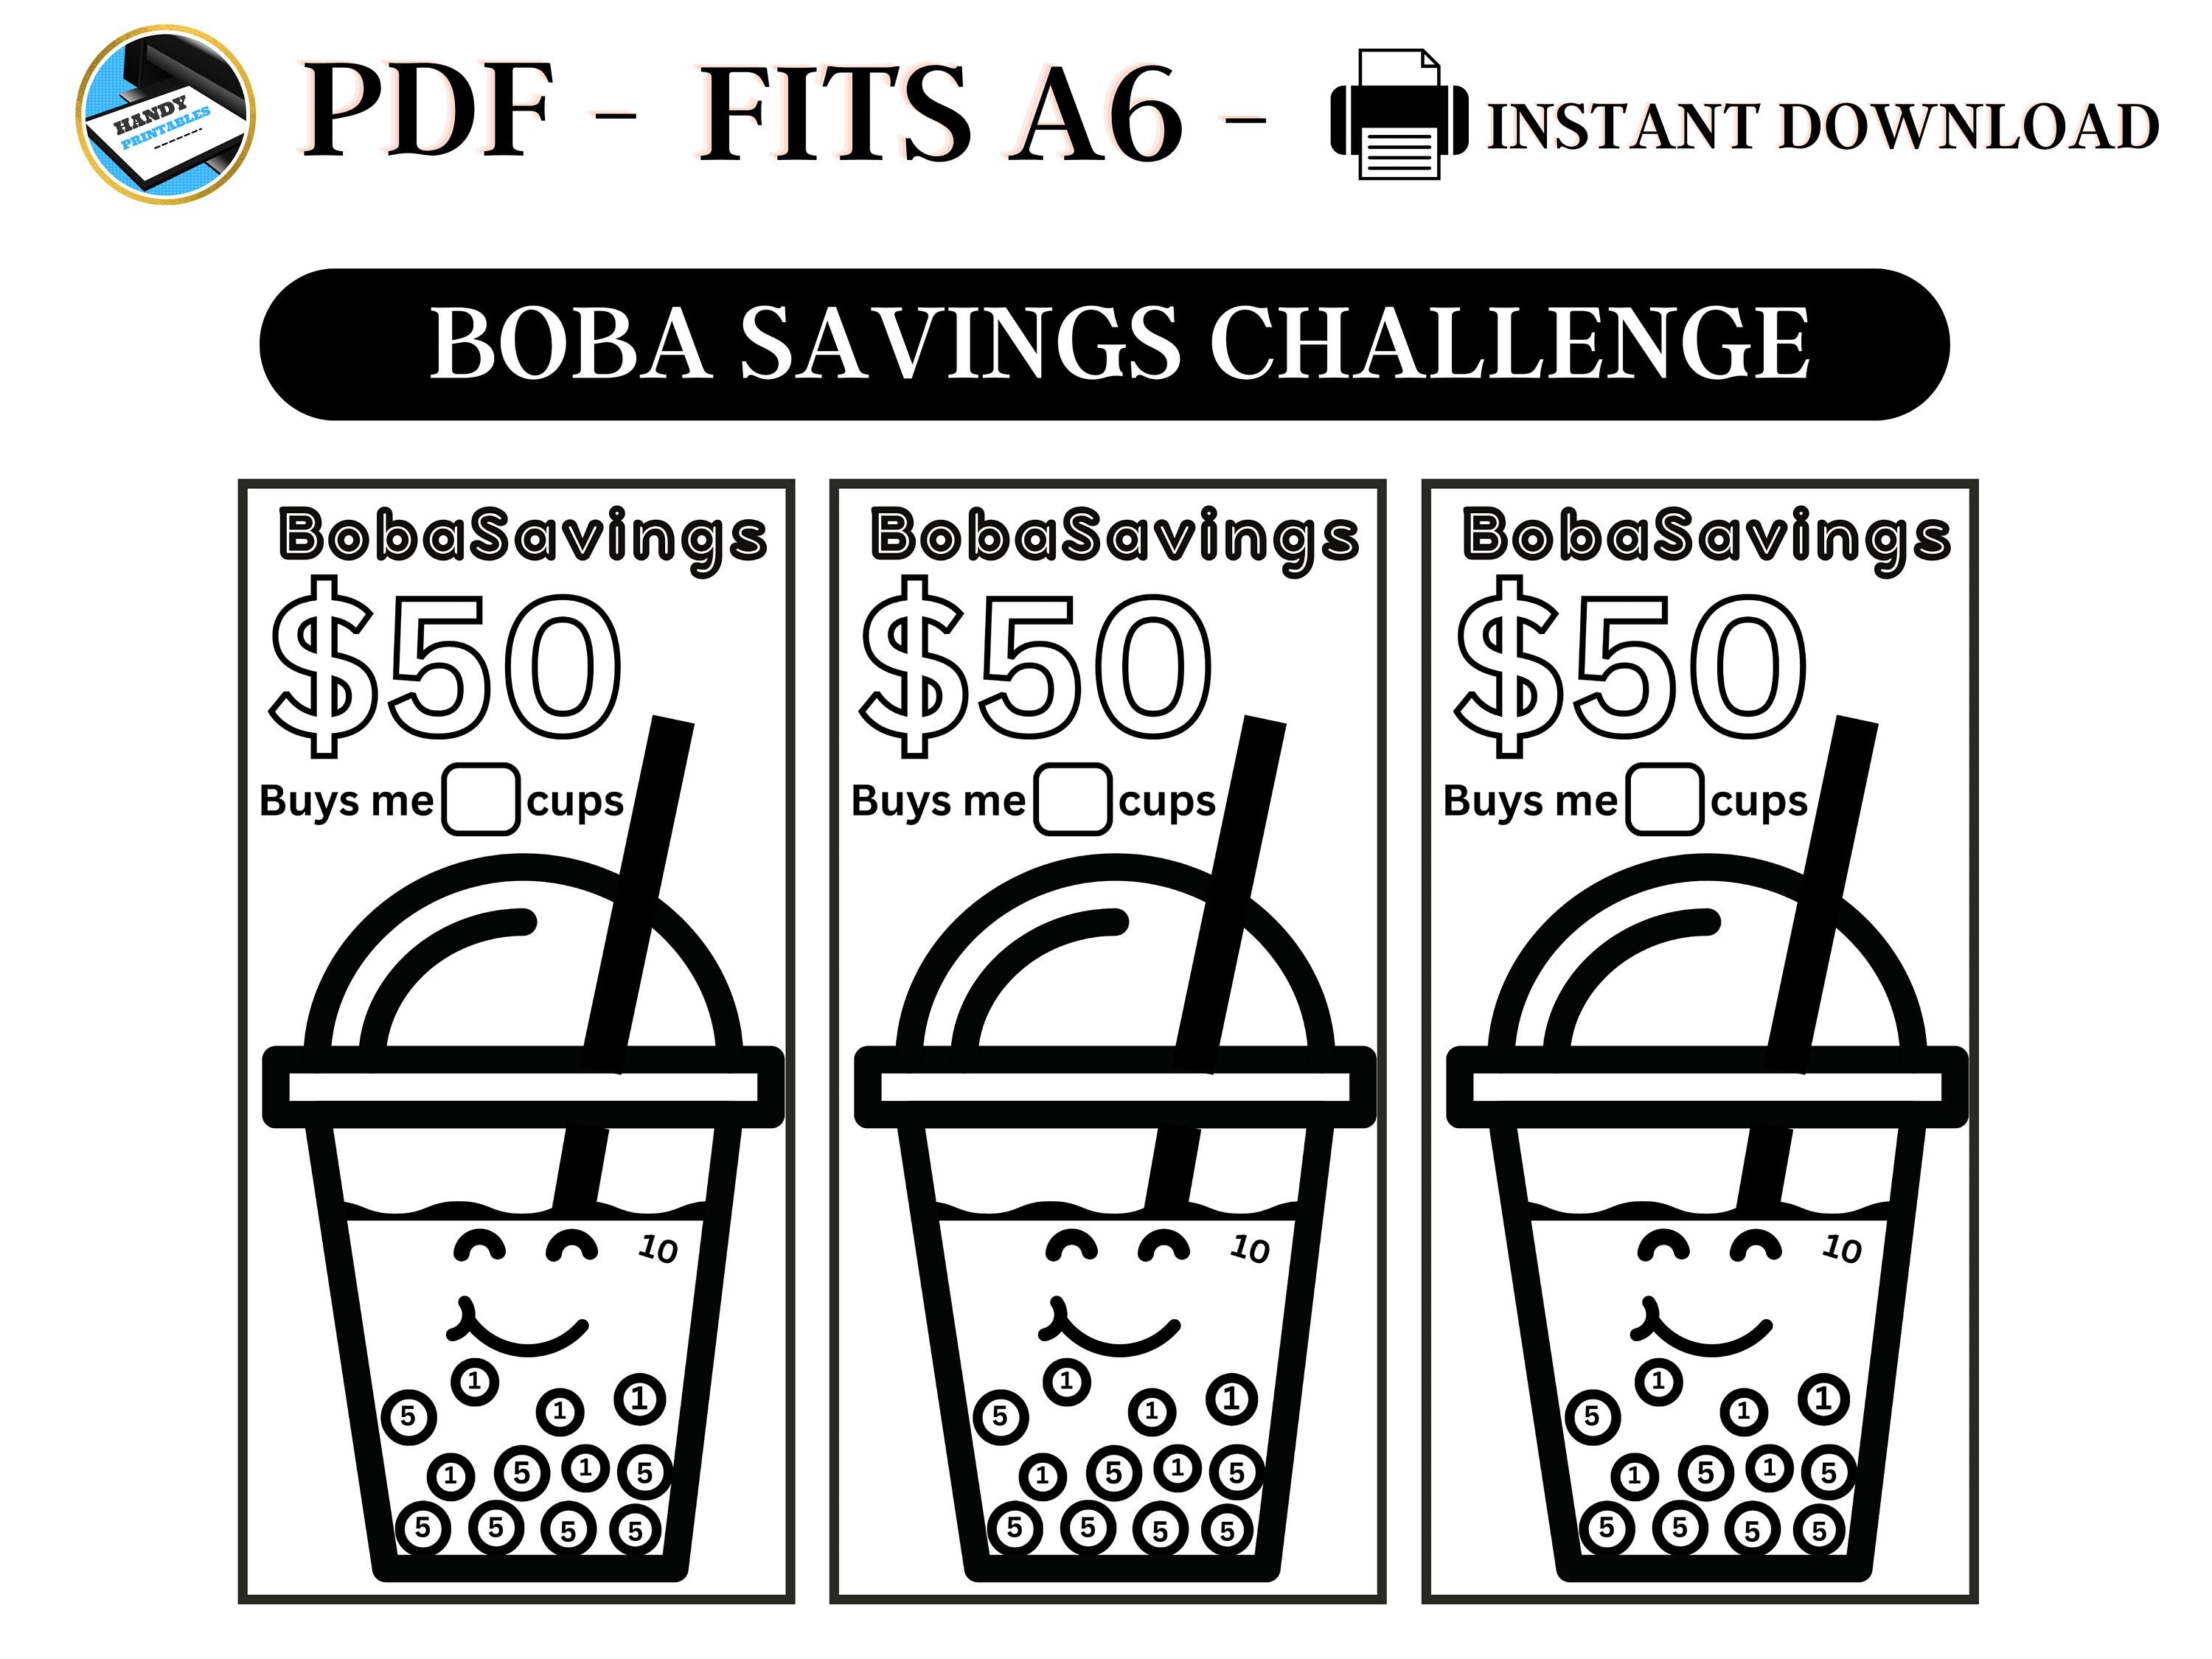 Boba Savings Challenge